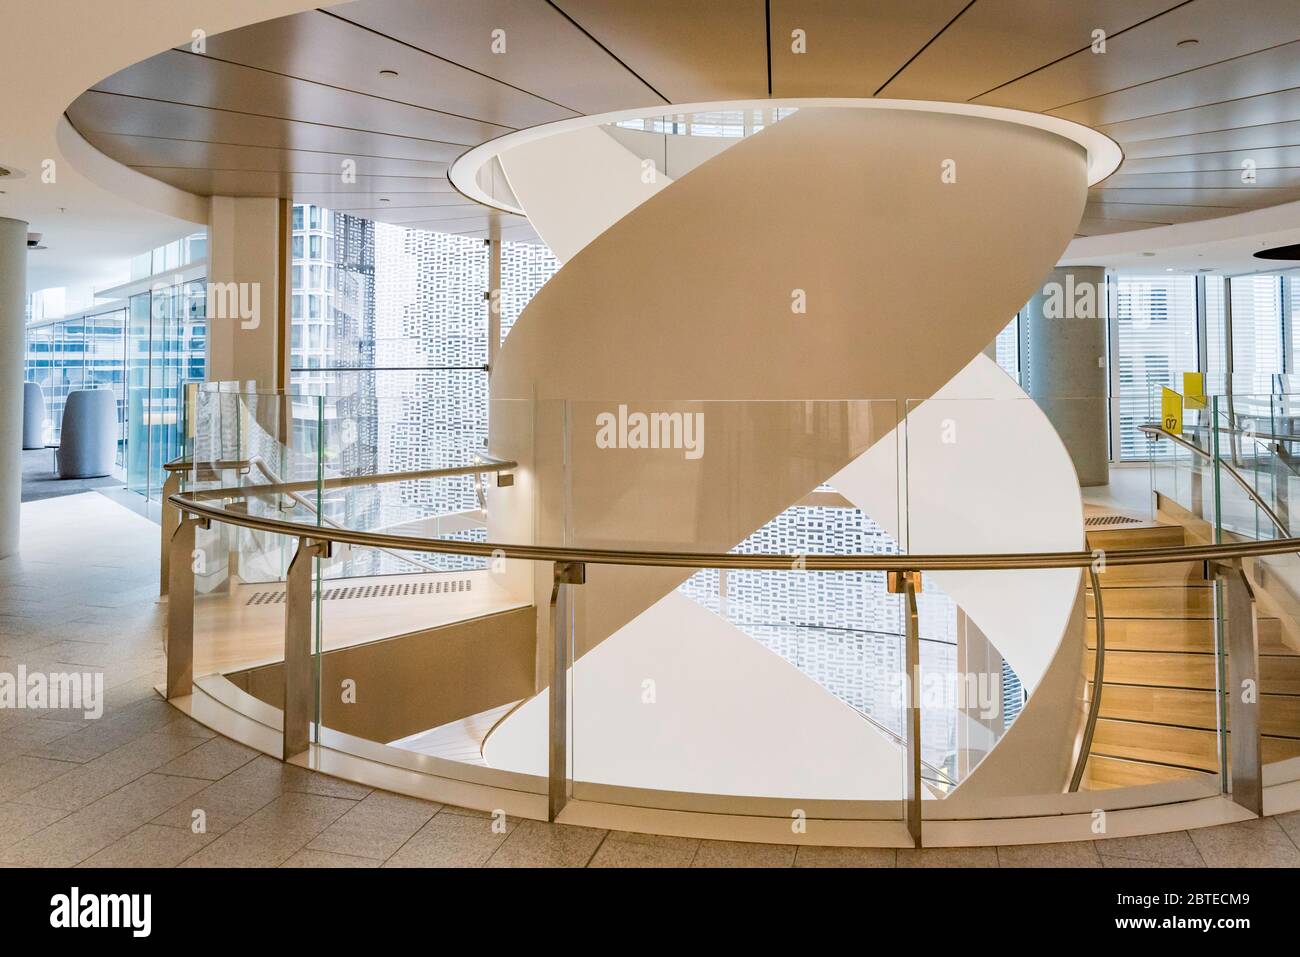 La escalera de doble hélice entrelazada en el nuevo edificio de la Universidad Central de la UTS en Sydney está hecha de acero australiano y vidrio curvo Foto de stock